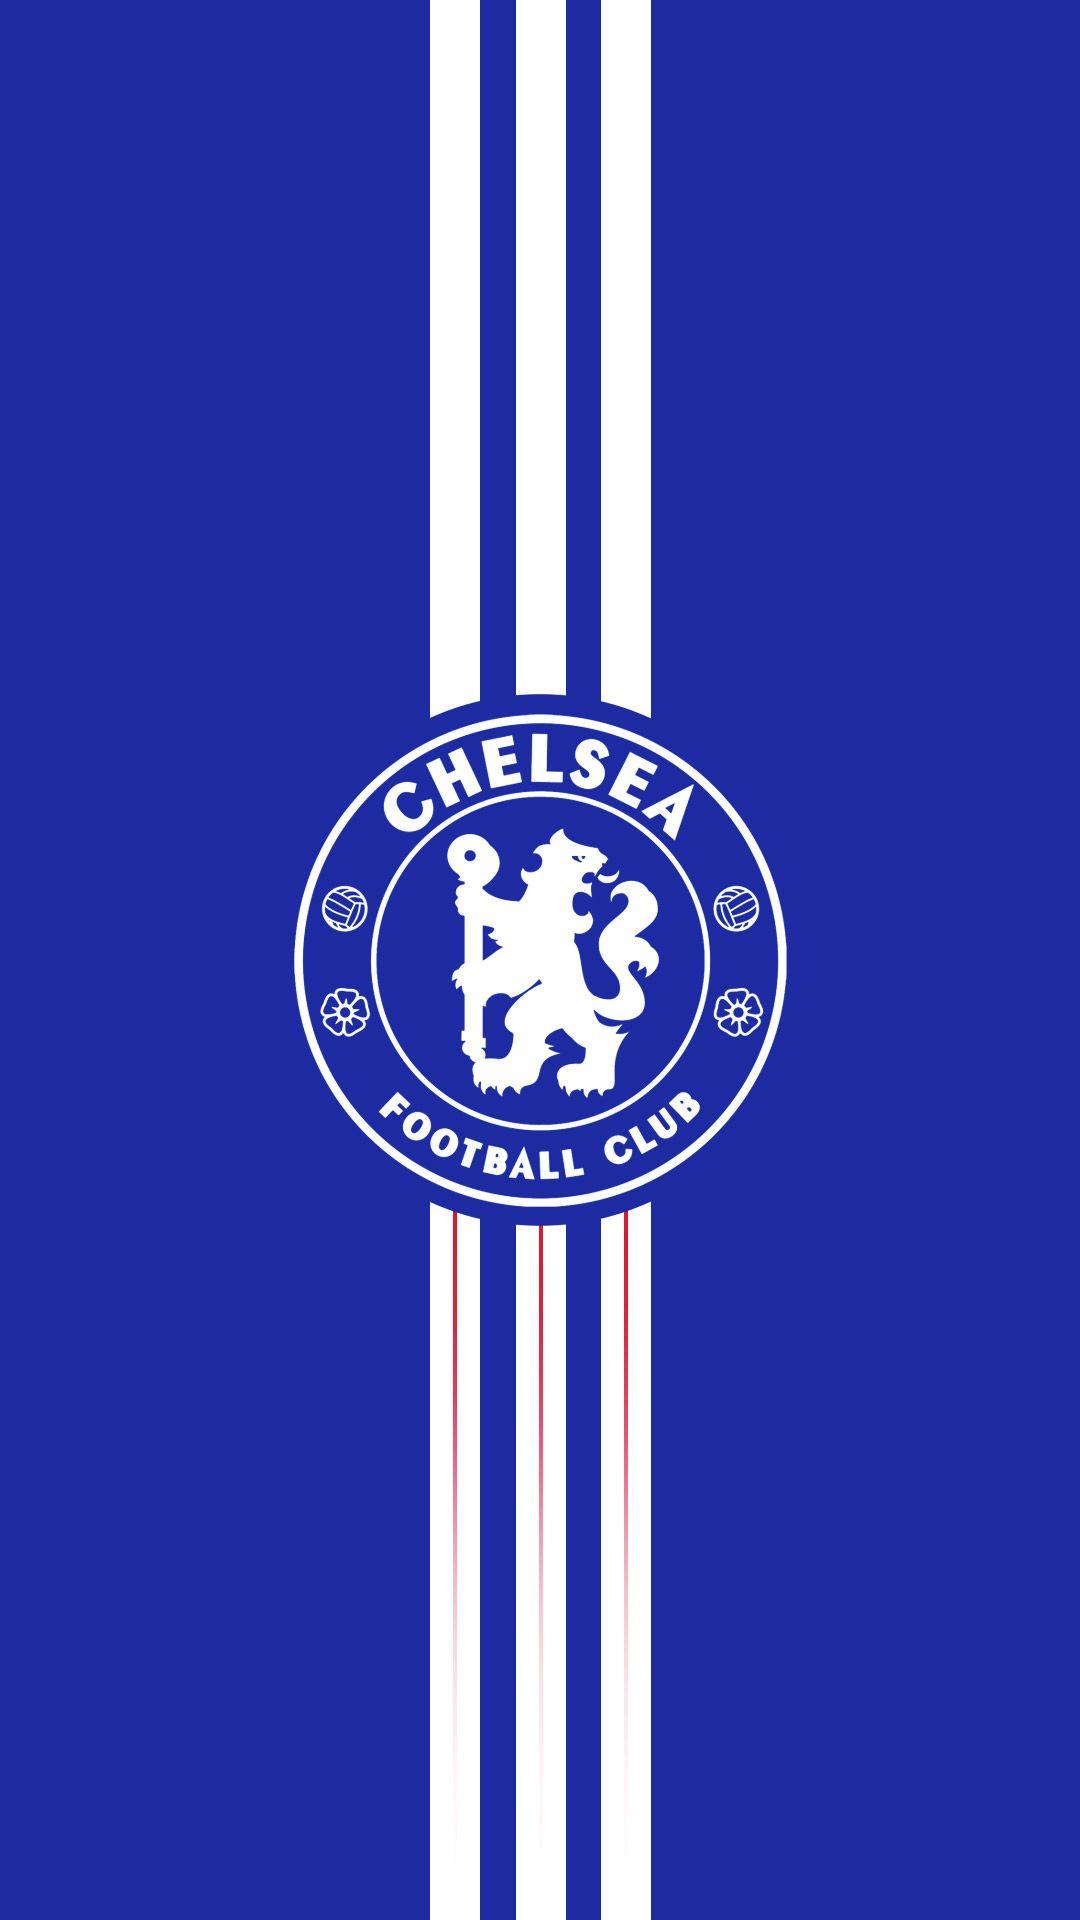 Vẻ đẹp của Chelsea cũng có thể được tản ra trên chiếc iPhone yêu quý của bạn nhờ những hình nền bóng đá Chelsea thật tuyệt vời và độc đáo. Nhanh tay tải xuống và cập nhật cho màn hình khóa và màn hình chính của bạn.